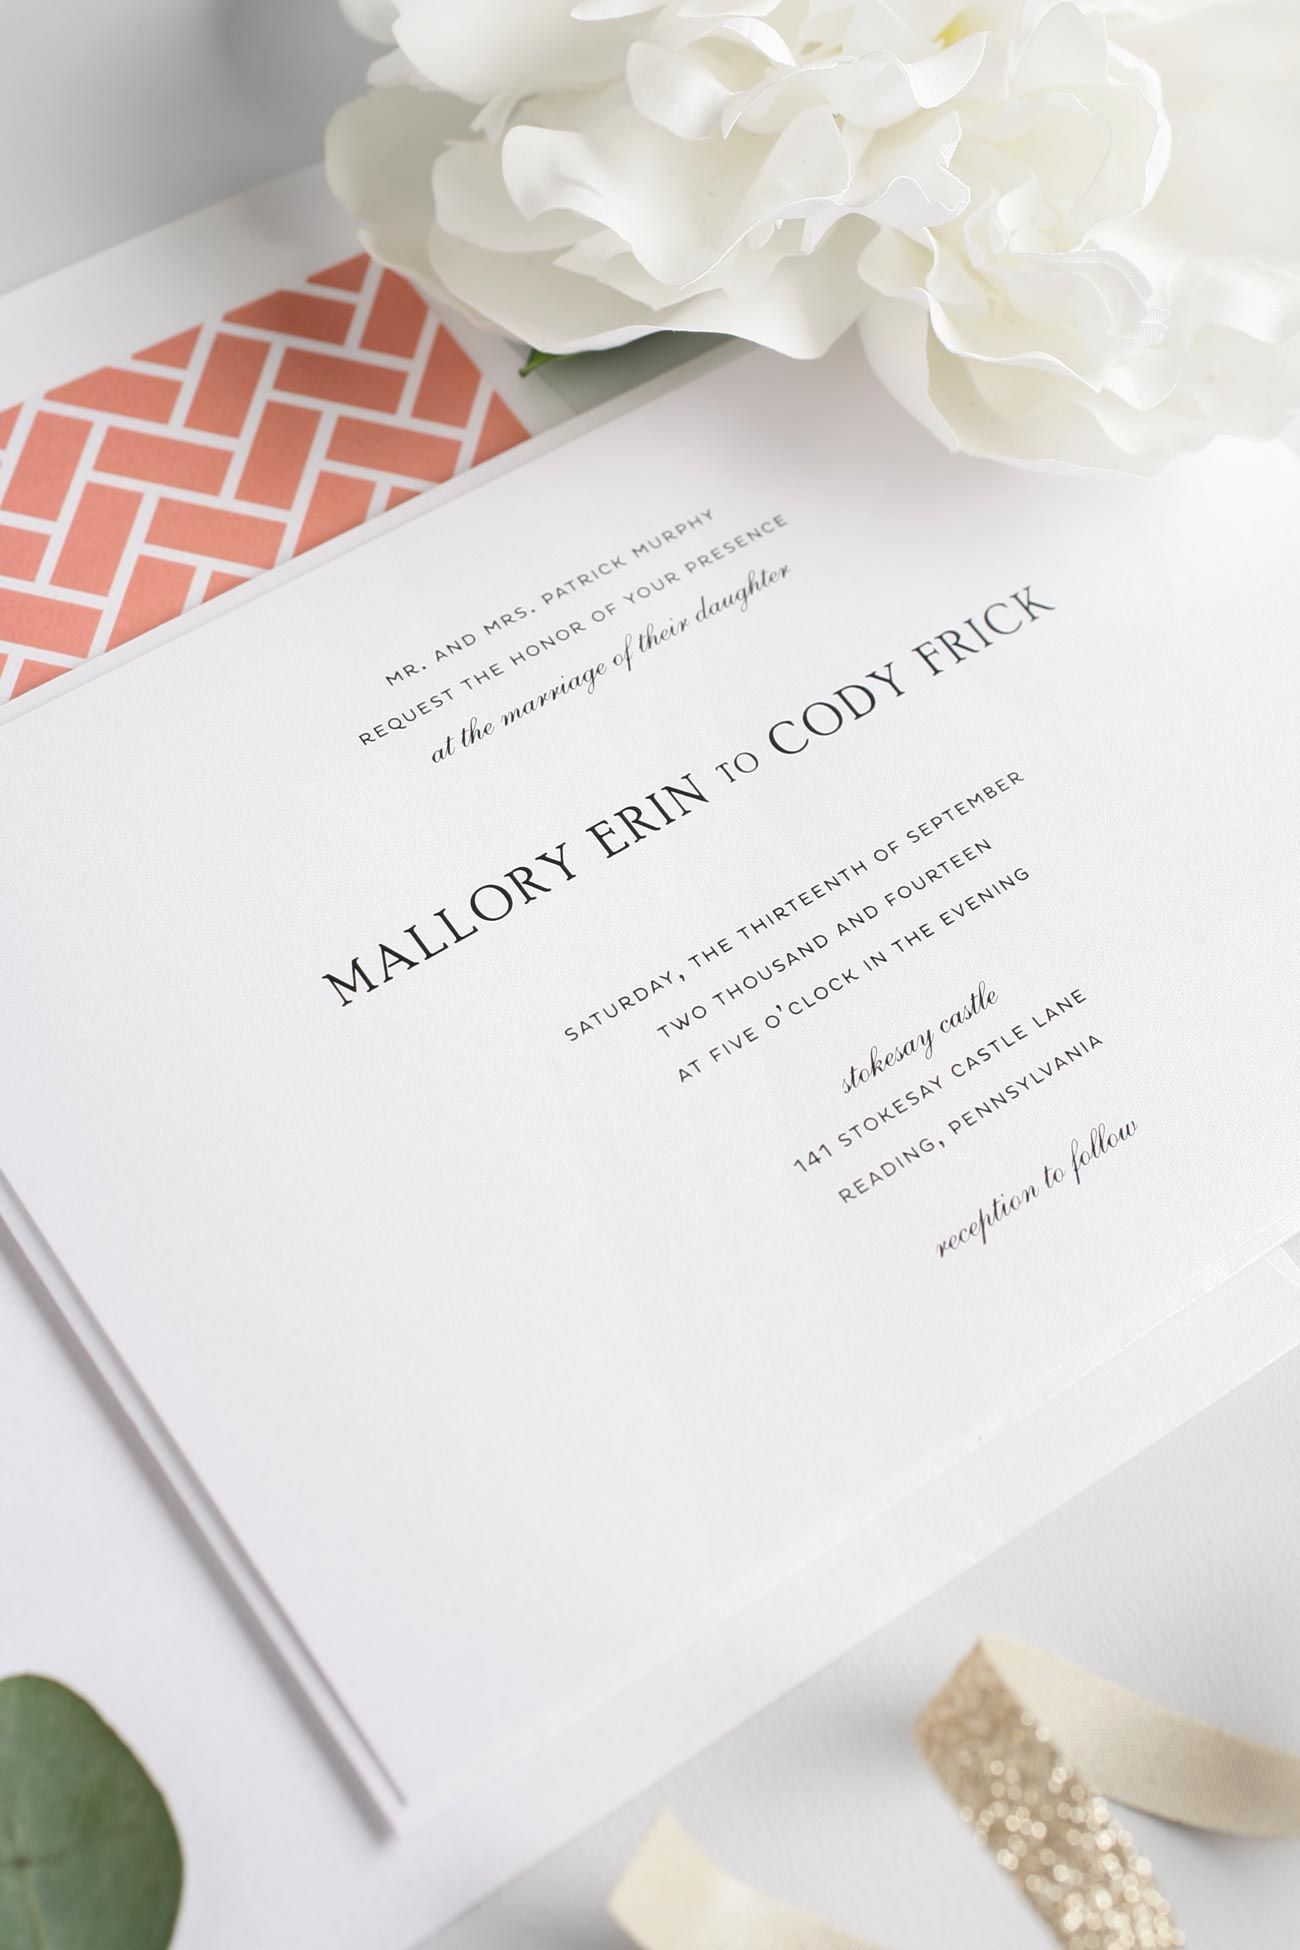 Simple Elegant Wedding Invitations Simple And Elegant Wedding Invitations In Coral Wedding Invitations